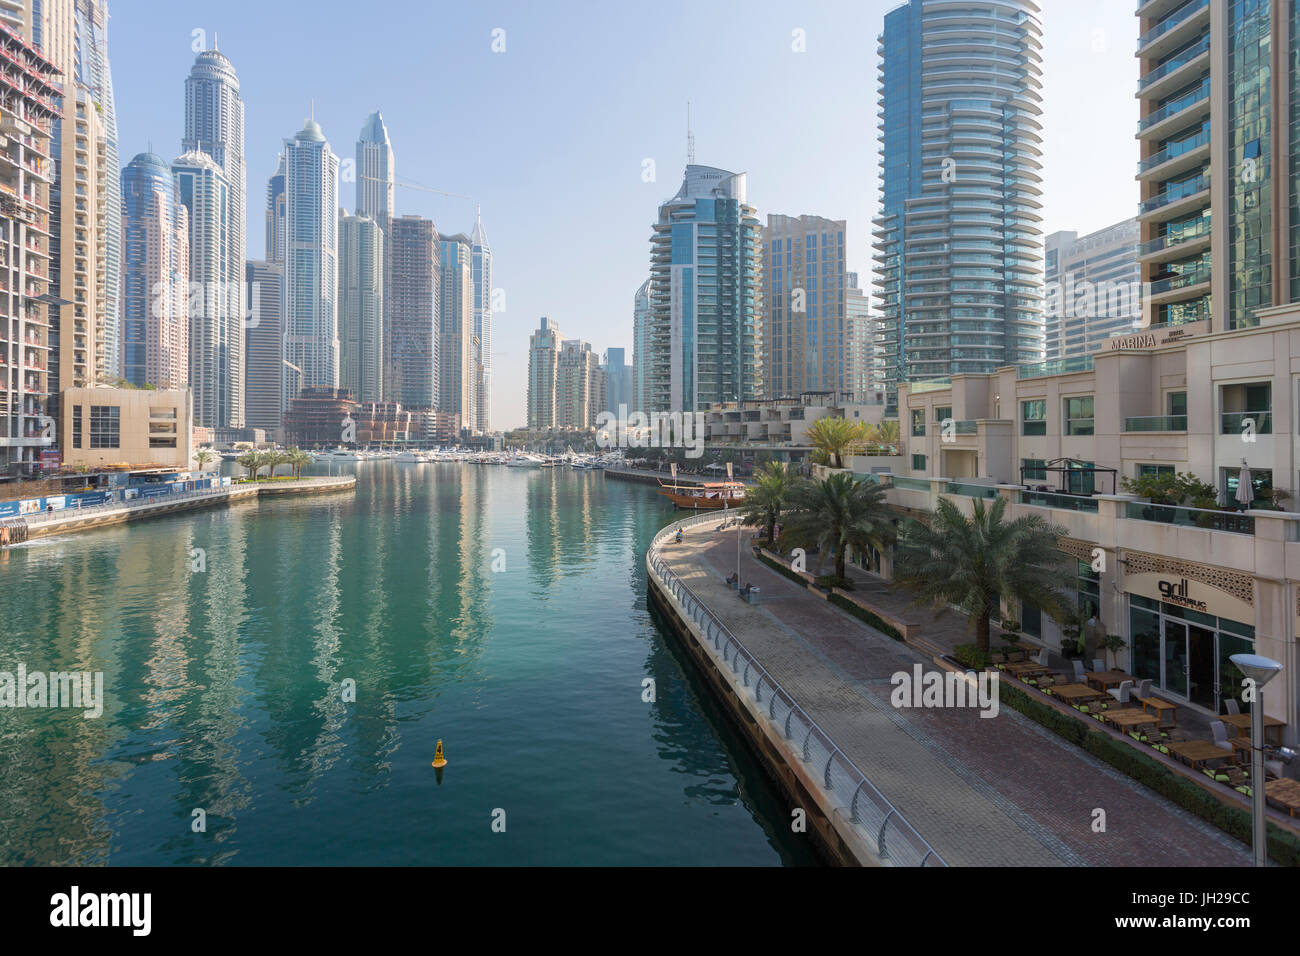 View of tall buildings in Dubai Marina, Dubai, United Arab Emirates, Middle East Stock Photo